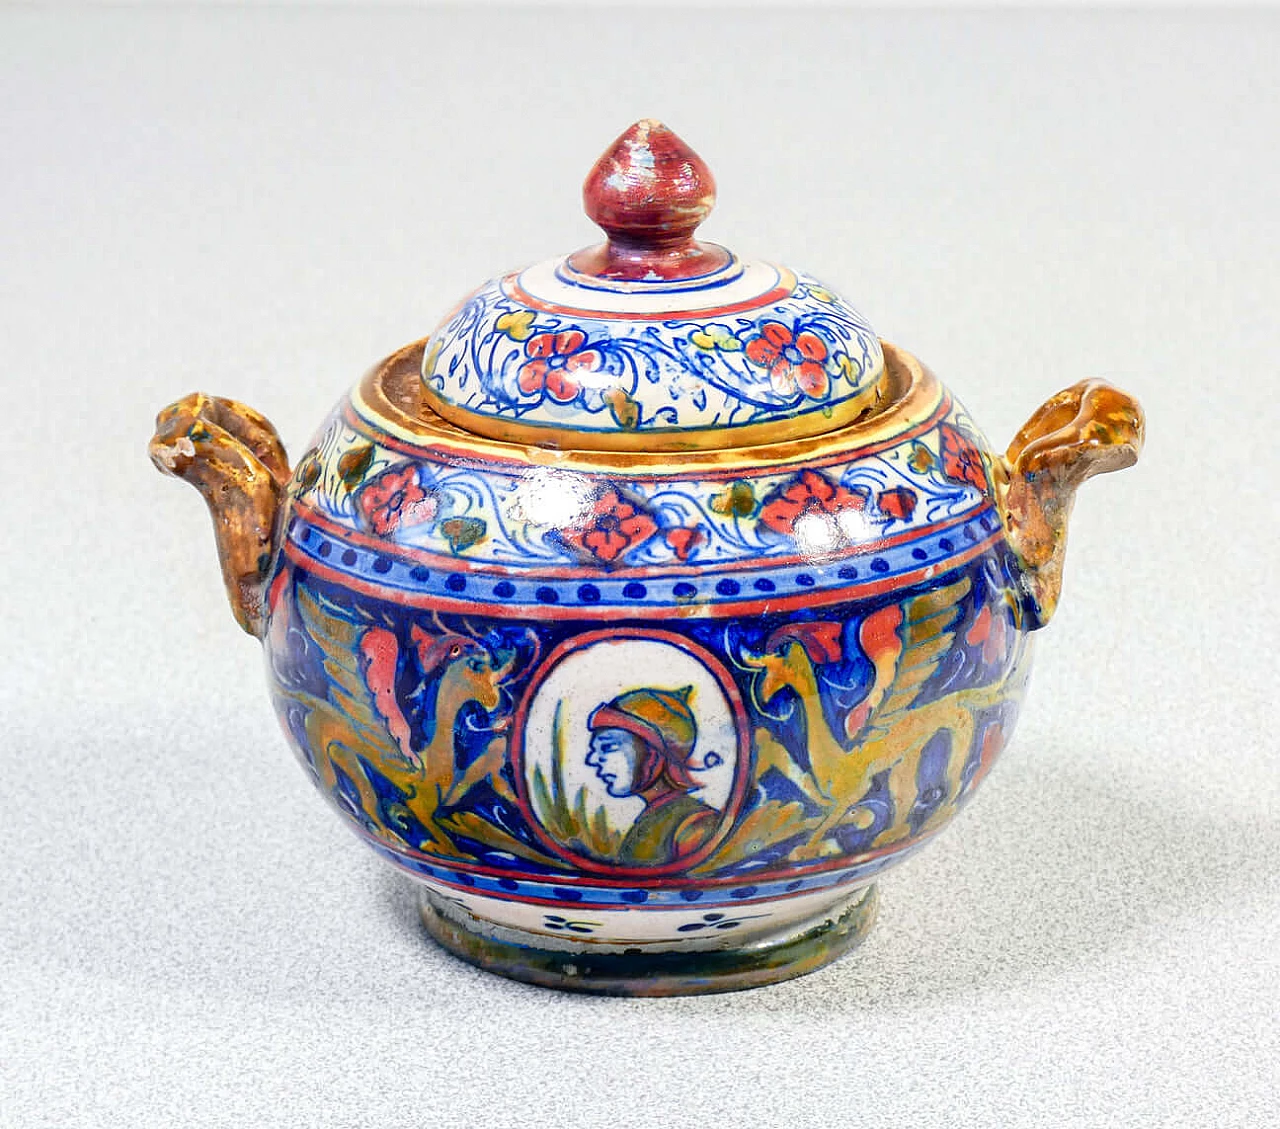 Ceramic teapot and sugar bowl by Mastro Giorgio Gualdo Tadino, early 20th century 11